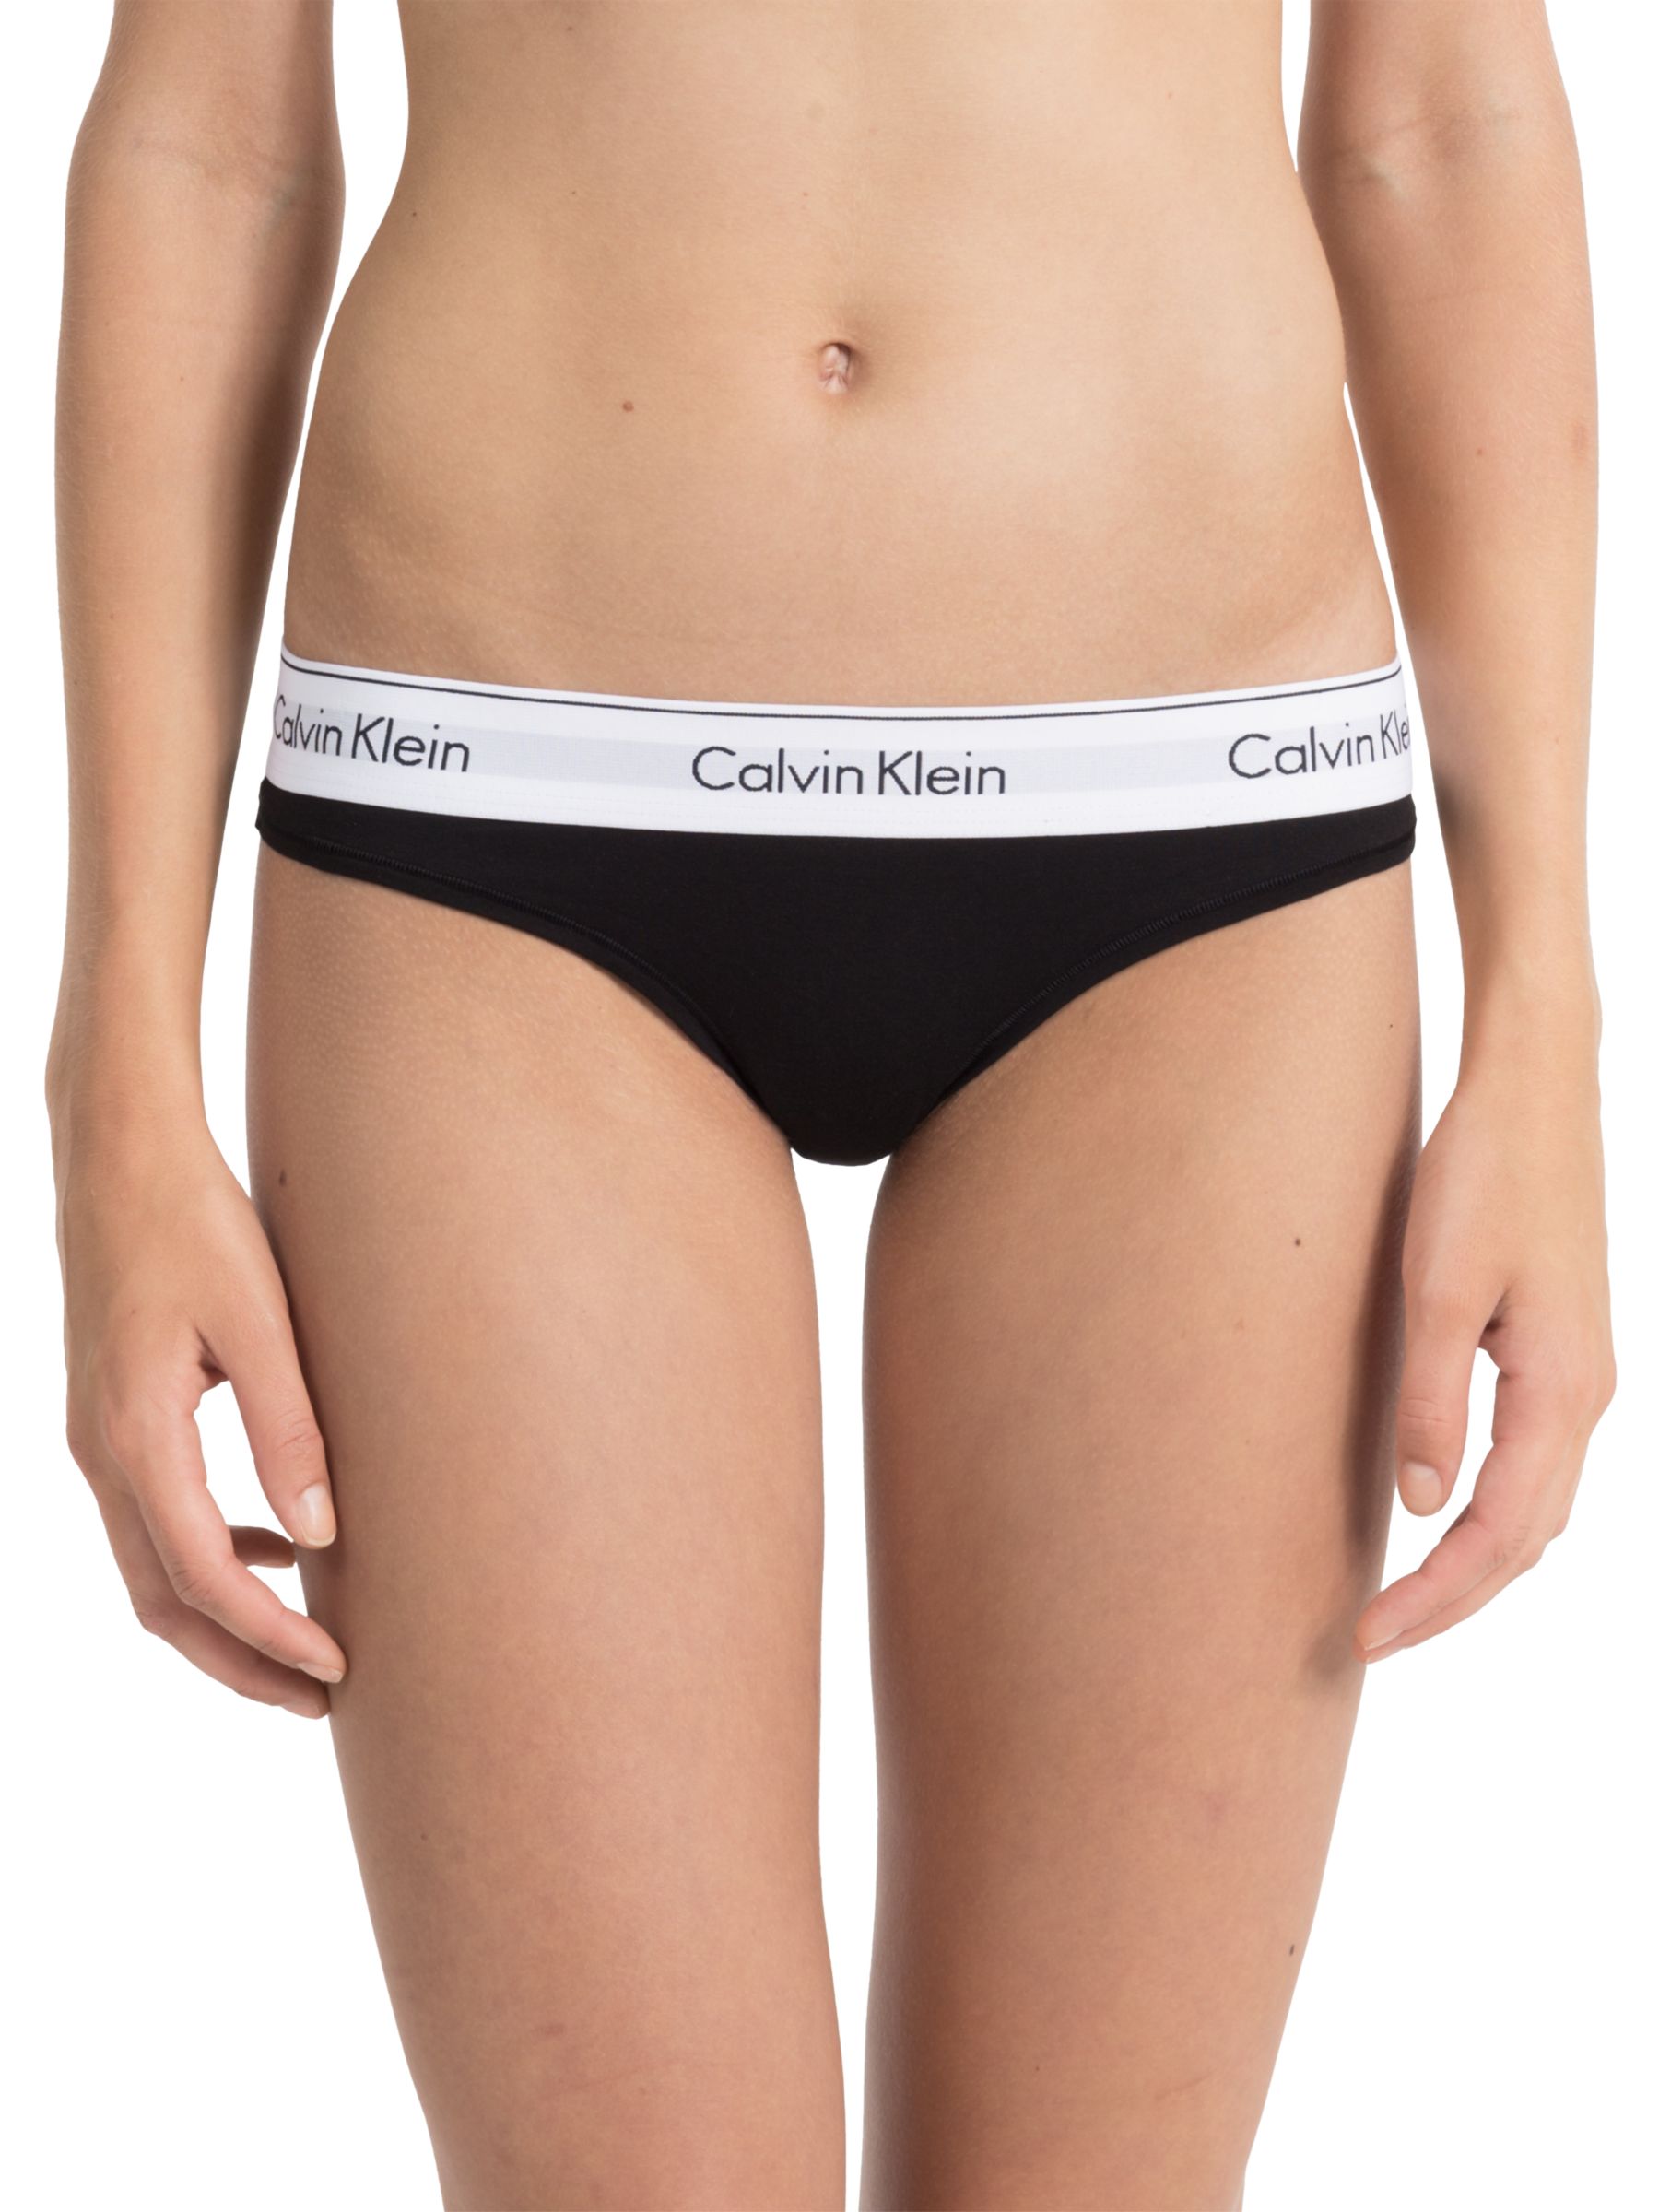 calvin klein women's cotton underwear